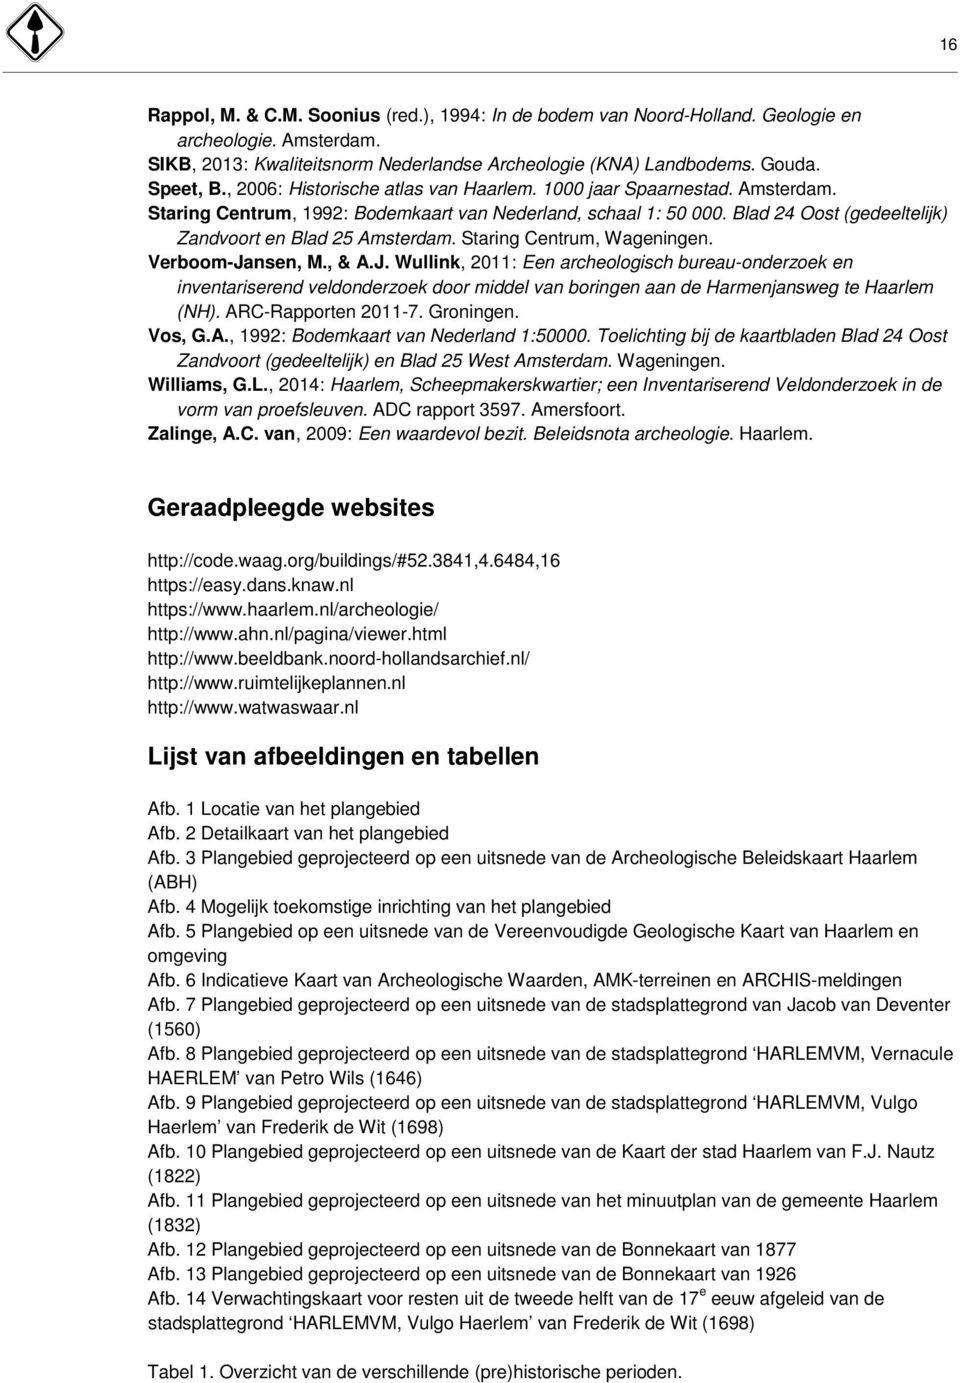 Staring Centrum, Wageningen. Verboom-Jansen, M., & A.J. Wullink, 2011: Een archeologisch bureau-onderzoek en inventariserend veldonderzoek door middel van boringen aan de Harmenjansweg te Haarlem (NH).